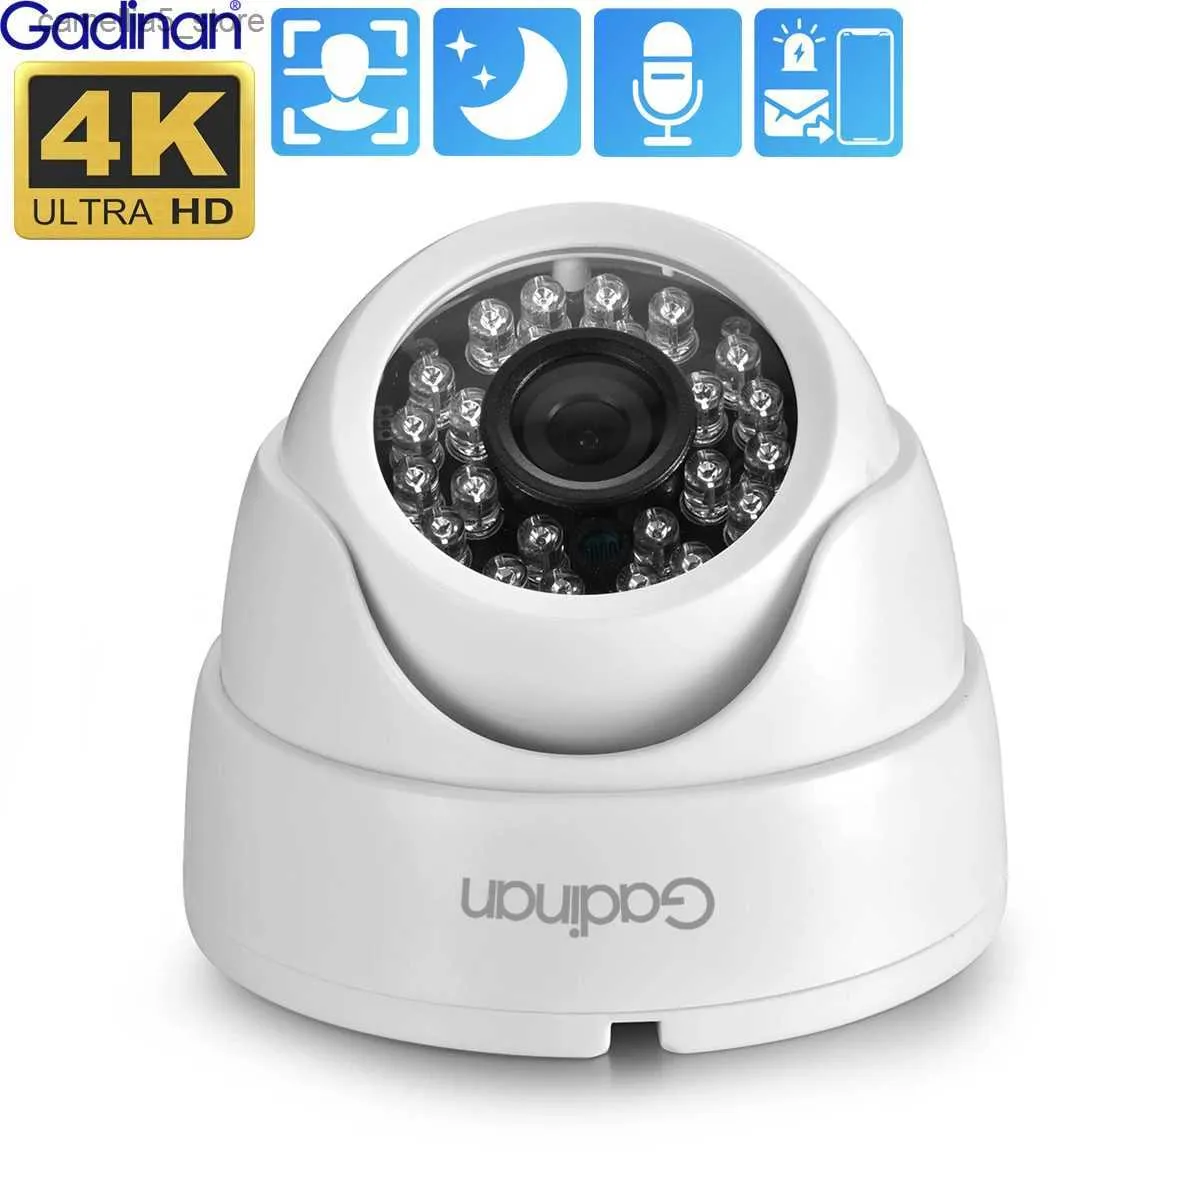 Bebek Monitör Kamerası Gadinan 4K 8mp IP Yüz Algılama H.265+Onvlf Dome Kapalı Ses CCTV Geniş Açısı 2.8mm Güvenlik POE İsteğe bağlı XMEYE Q240308